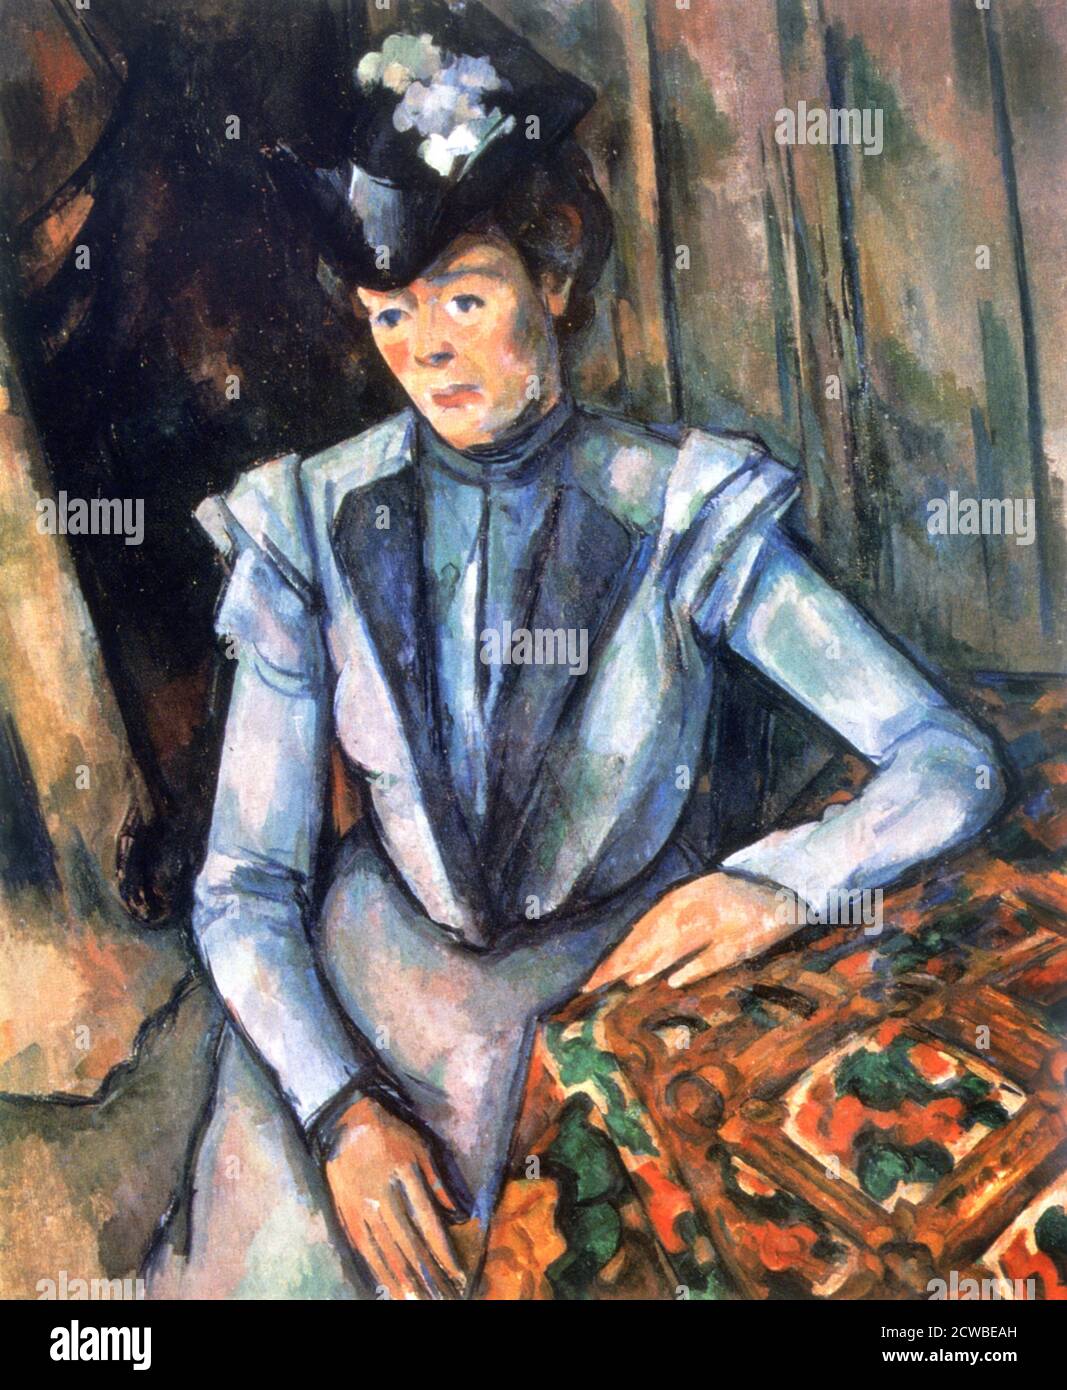 Donna seduta in blu', 1902-1906. Artista: Paul Cezanne. Cezanne (1839-1906) fu un artista francese e pittore post-impressionista il cui lavoro gettò le basi per la transizione dal movimento impressionista del XIX secolo agli stili del XX secolo come il cubismo. Foto Stock